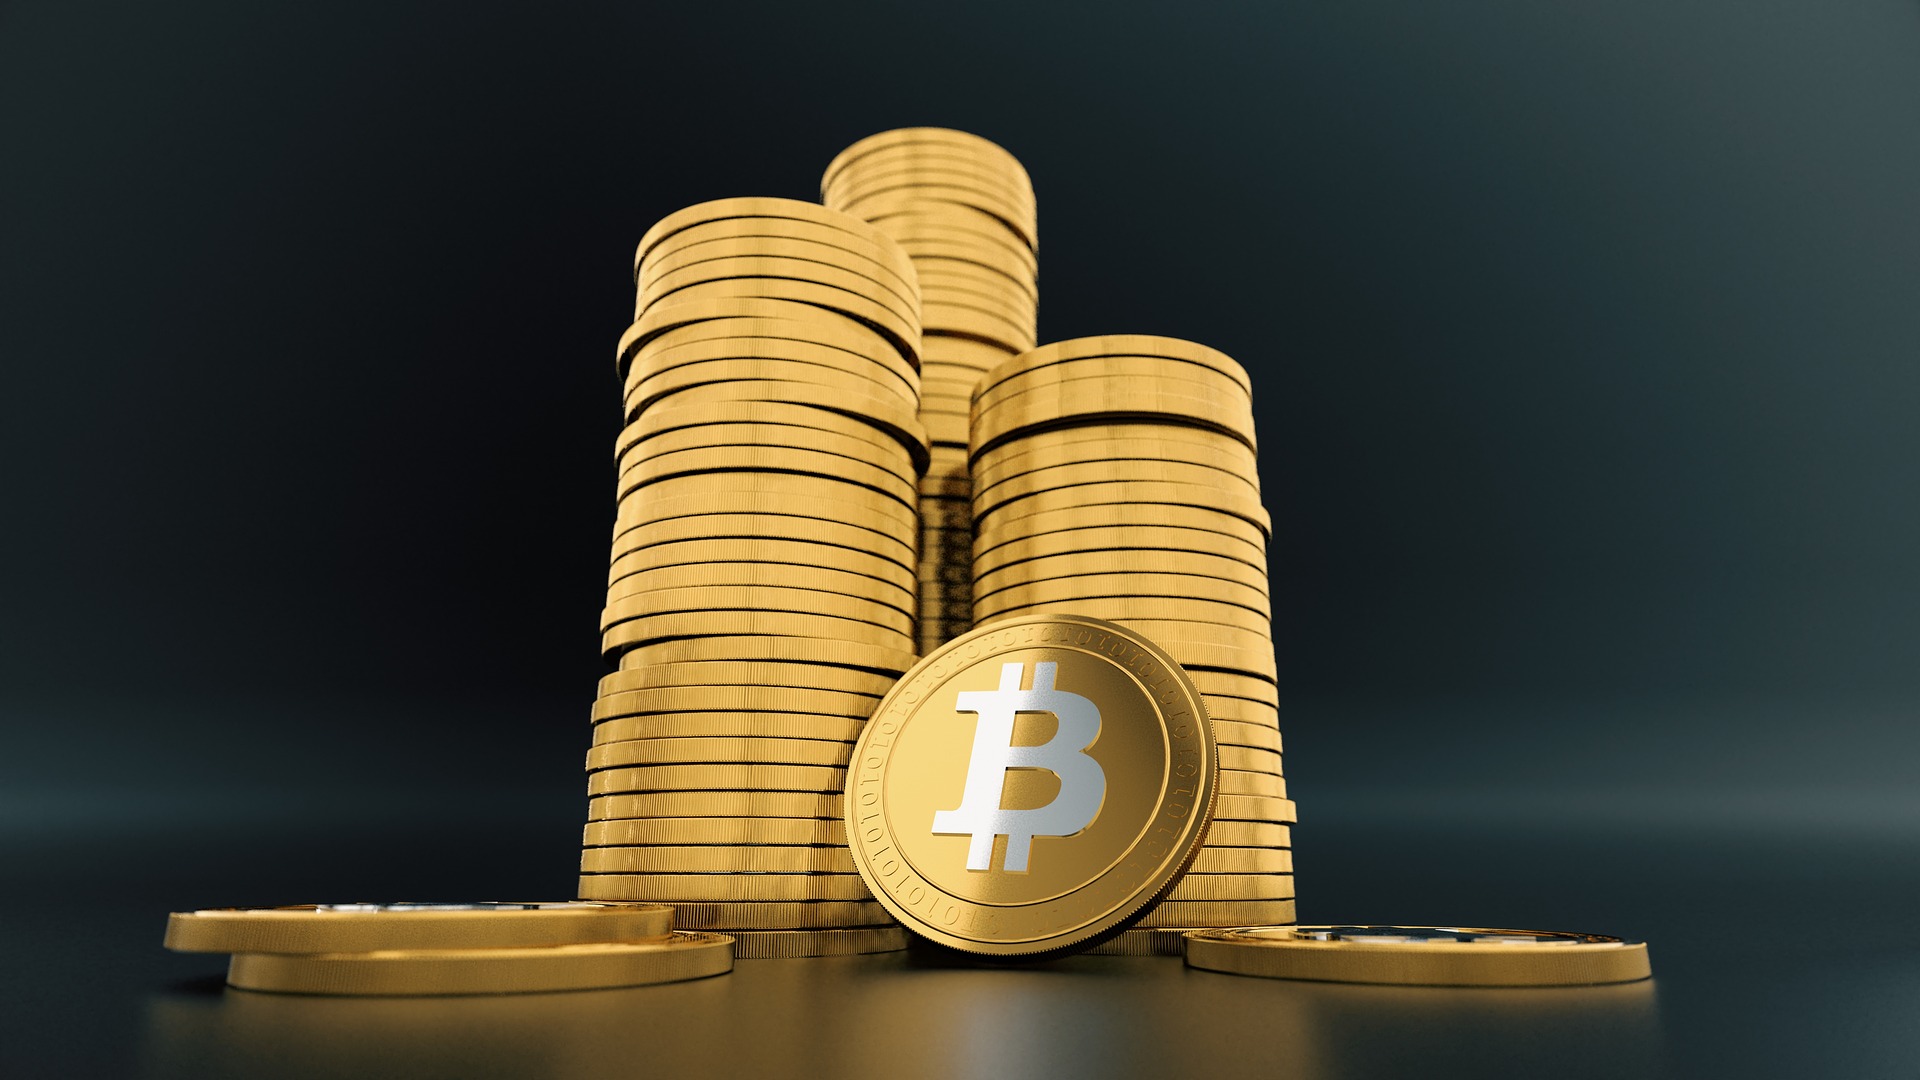 Bitcoin Investor's guide